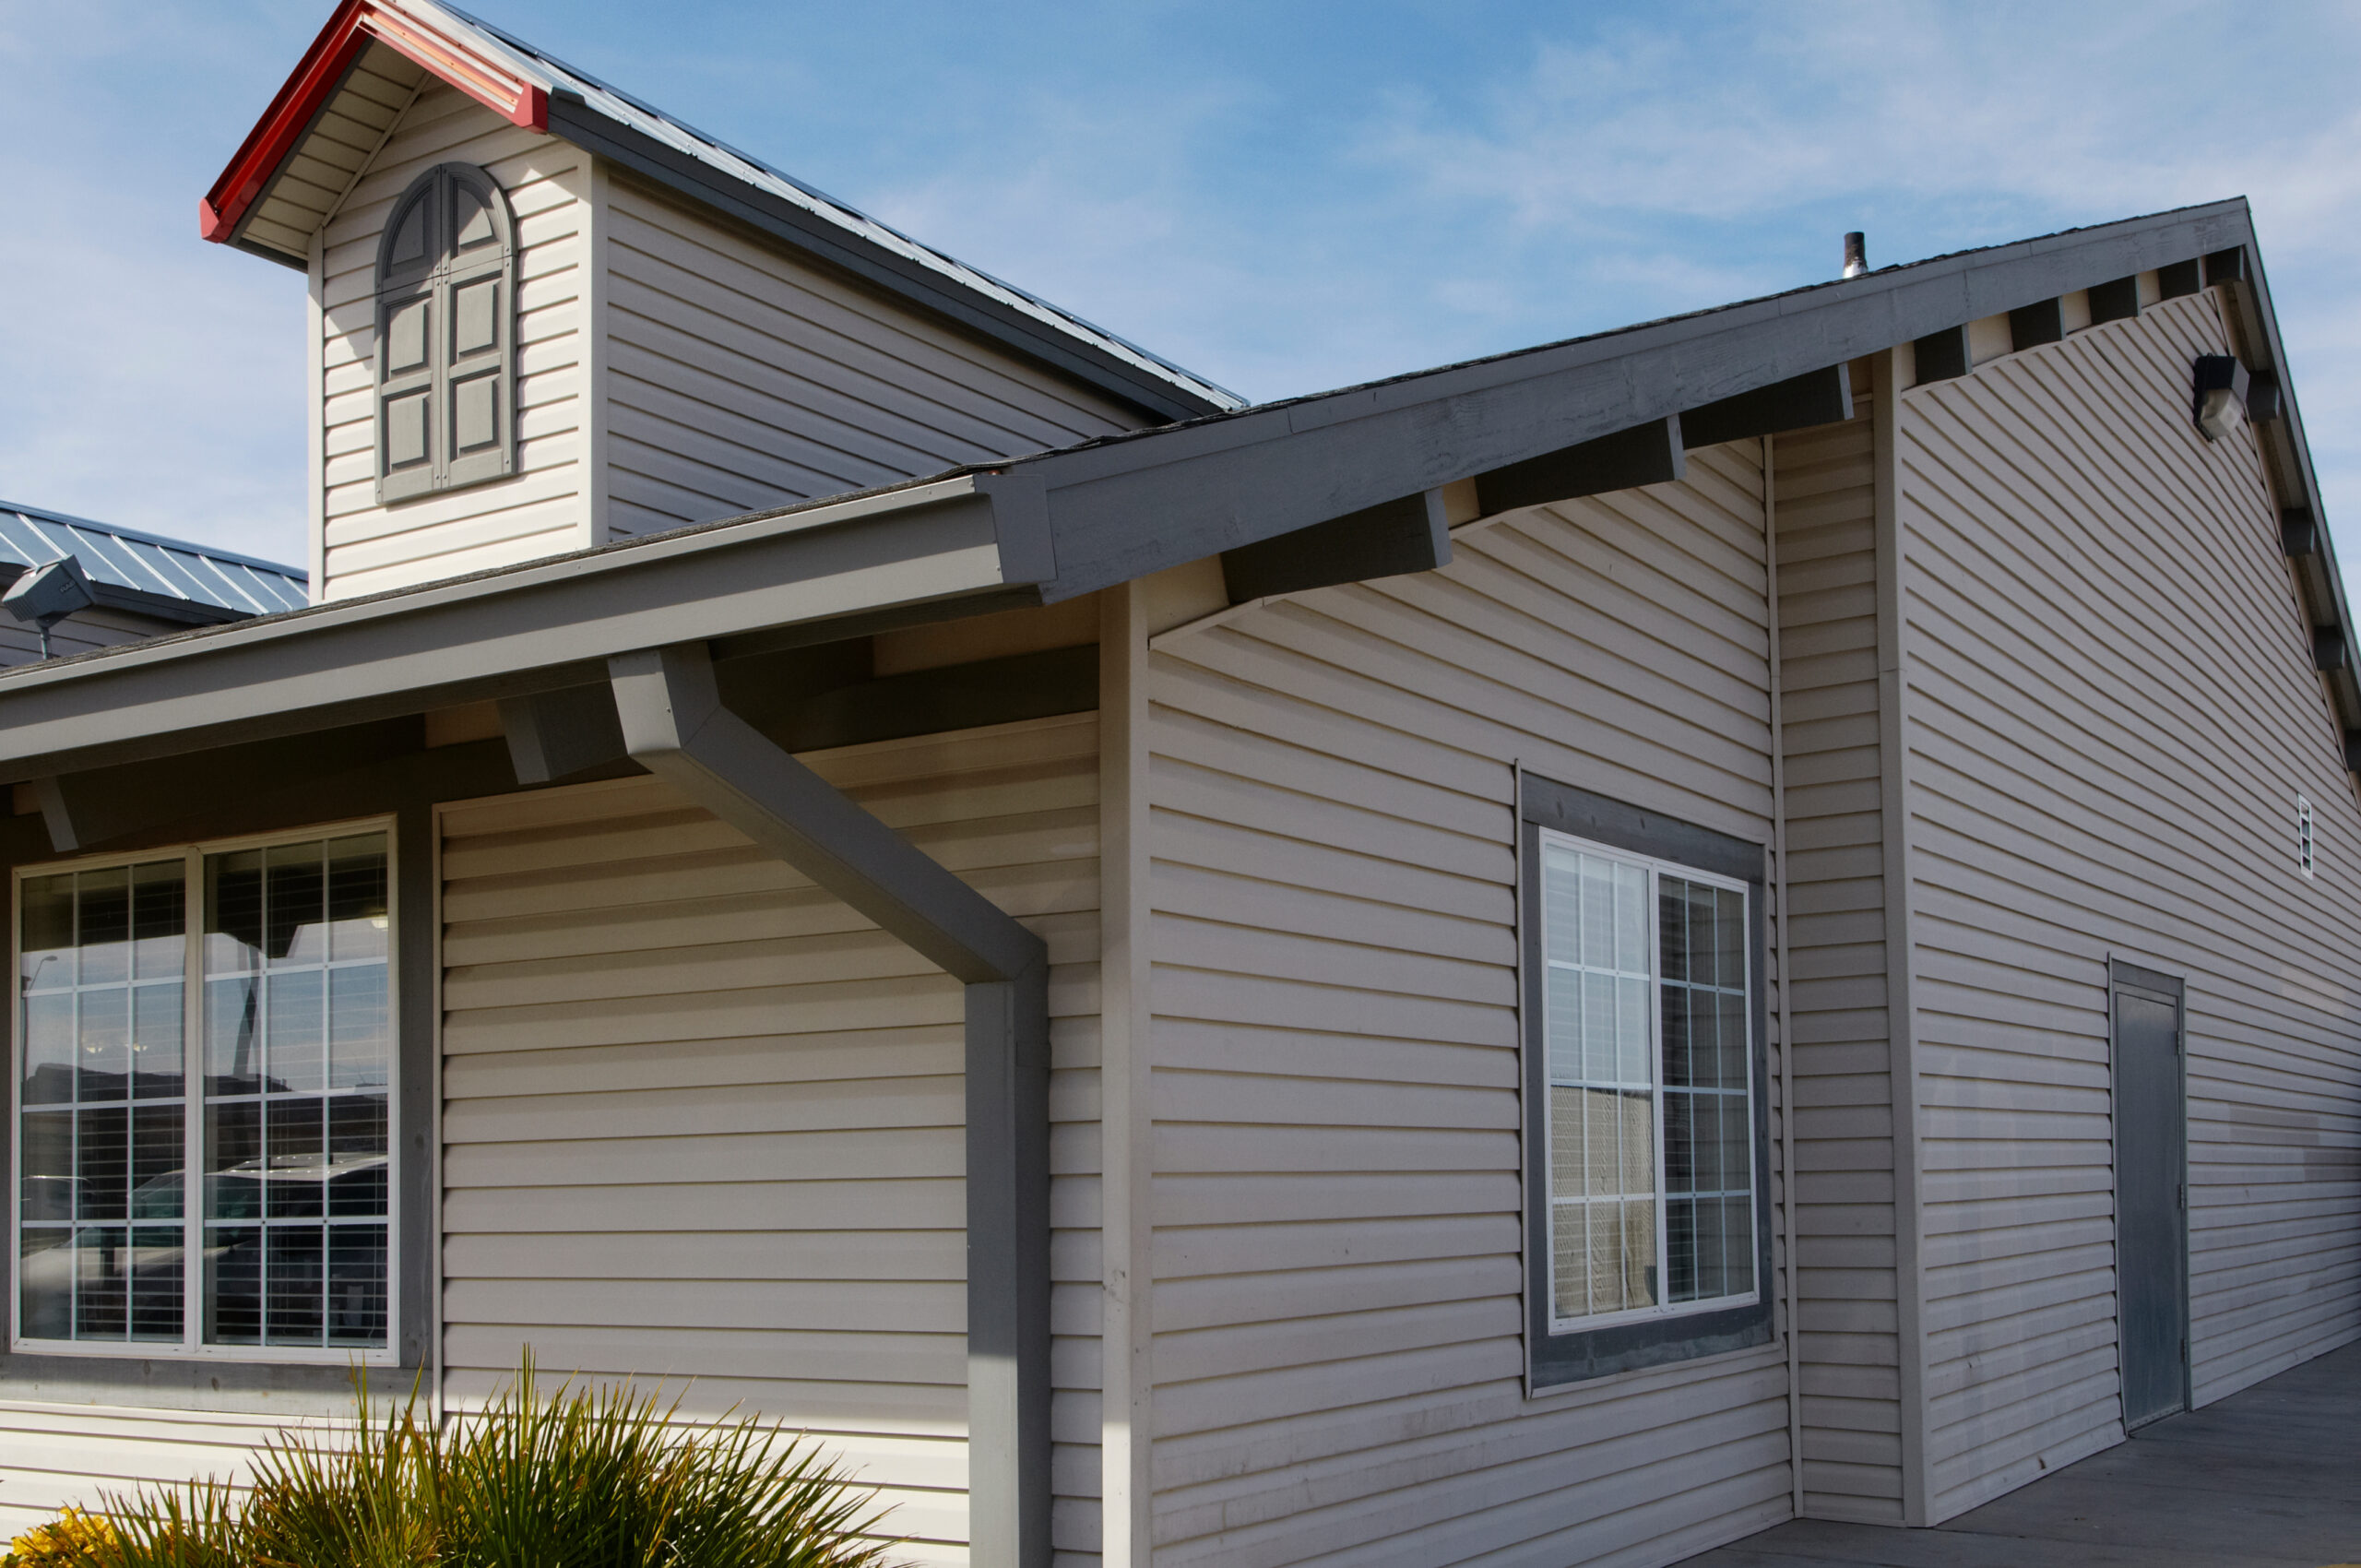 Das richtige Material für die Dachentwässerung: Haus von Außen mit Blick aufs Dach.